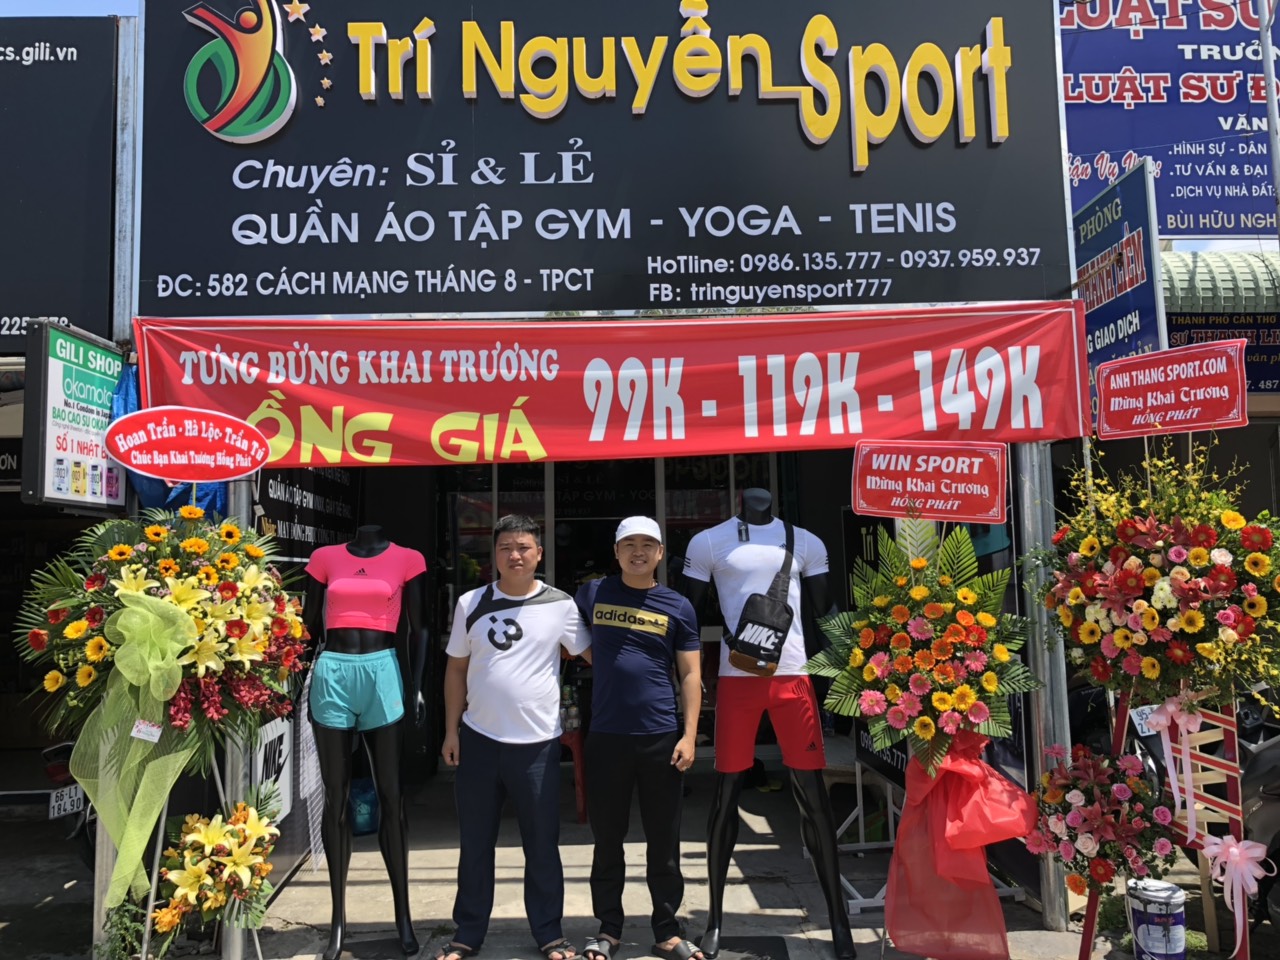 Tưng Bừng Khai Trương Cửa Hàng Thể Thao Tại Cần Thơ - Trí Nguyễn Sport